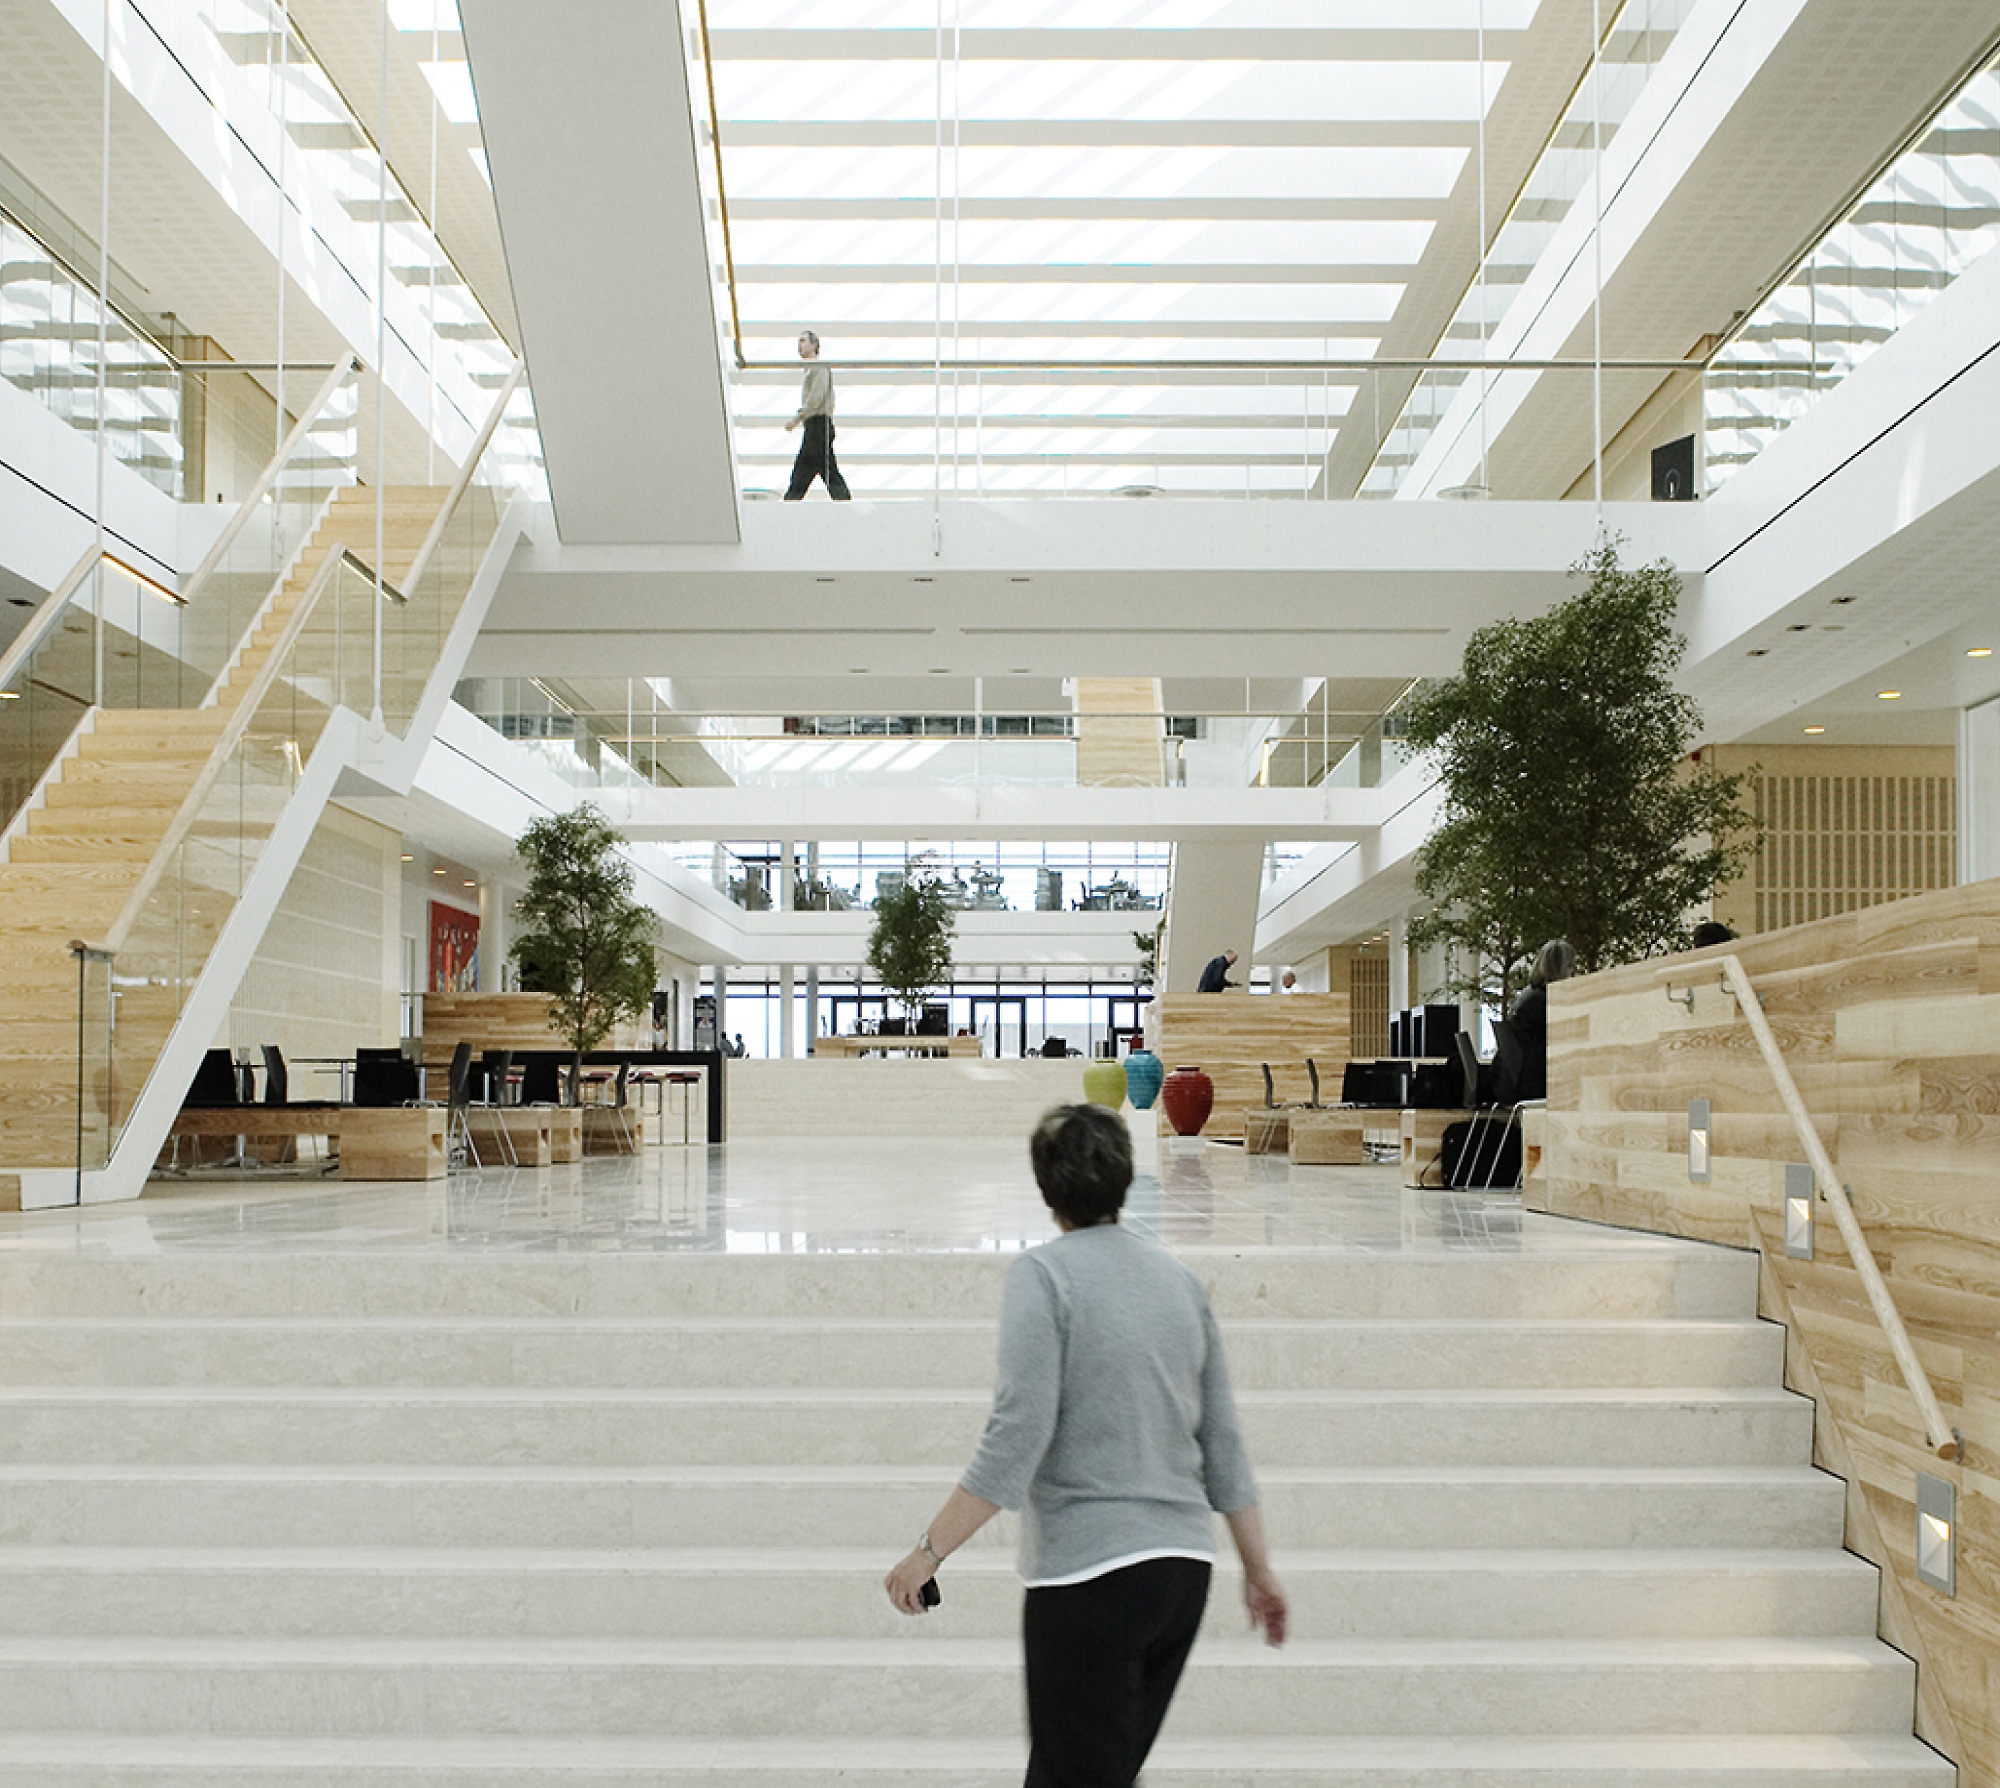 Sảnh văn phòng hiện đại với cầu thang màu trắng lớn, bộ sưu tập gỗ và mọi người đang đi bộ xung quanh. không khí sáng và thoáng mát.